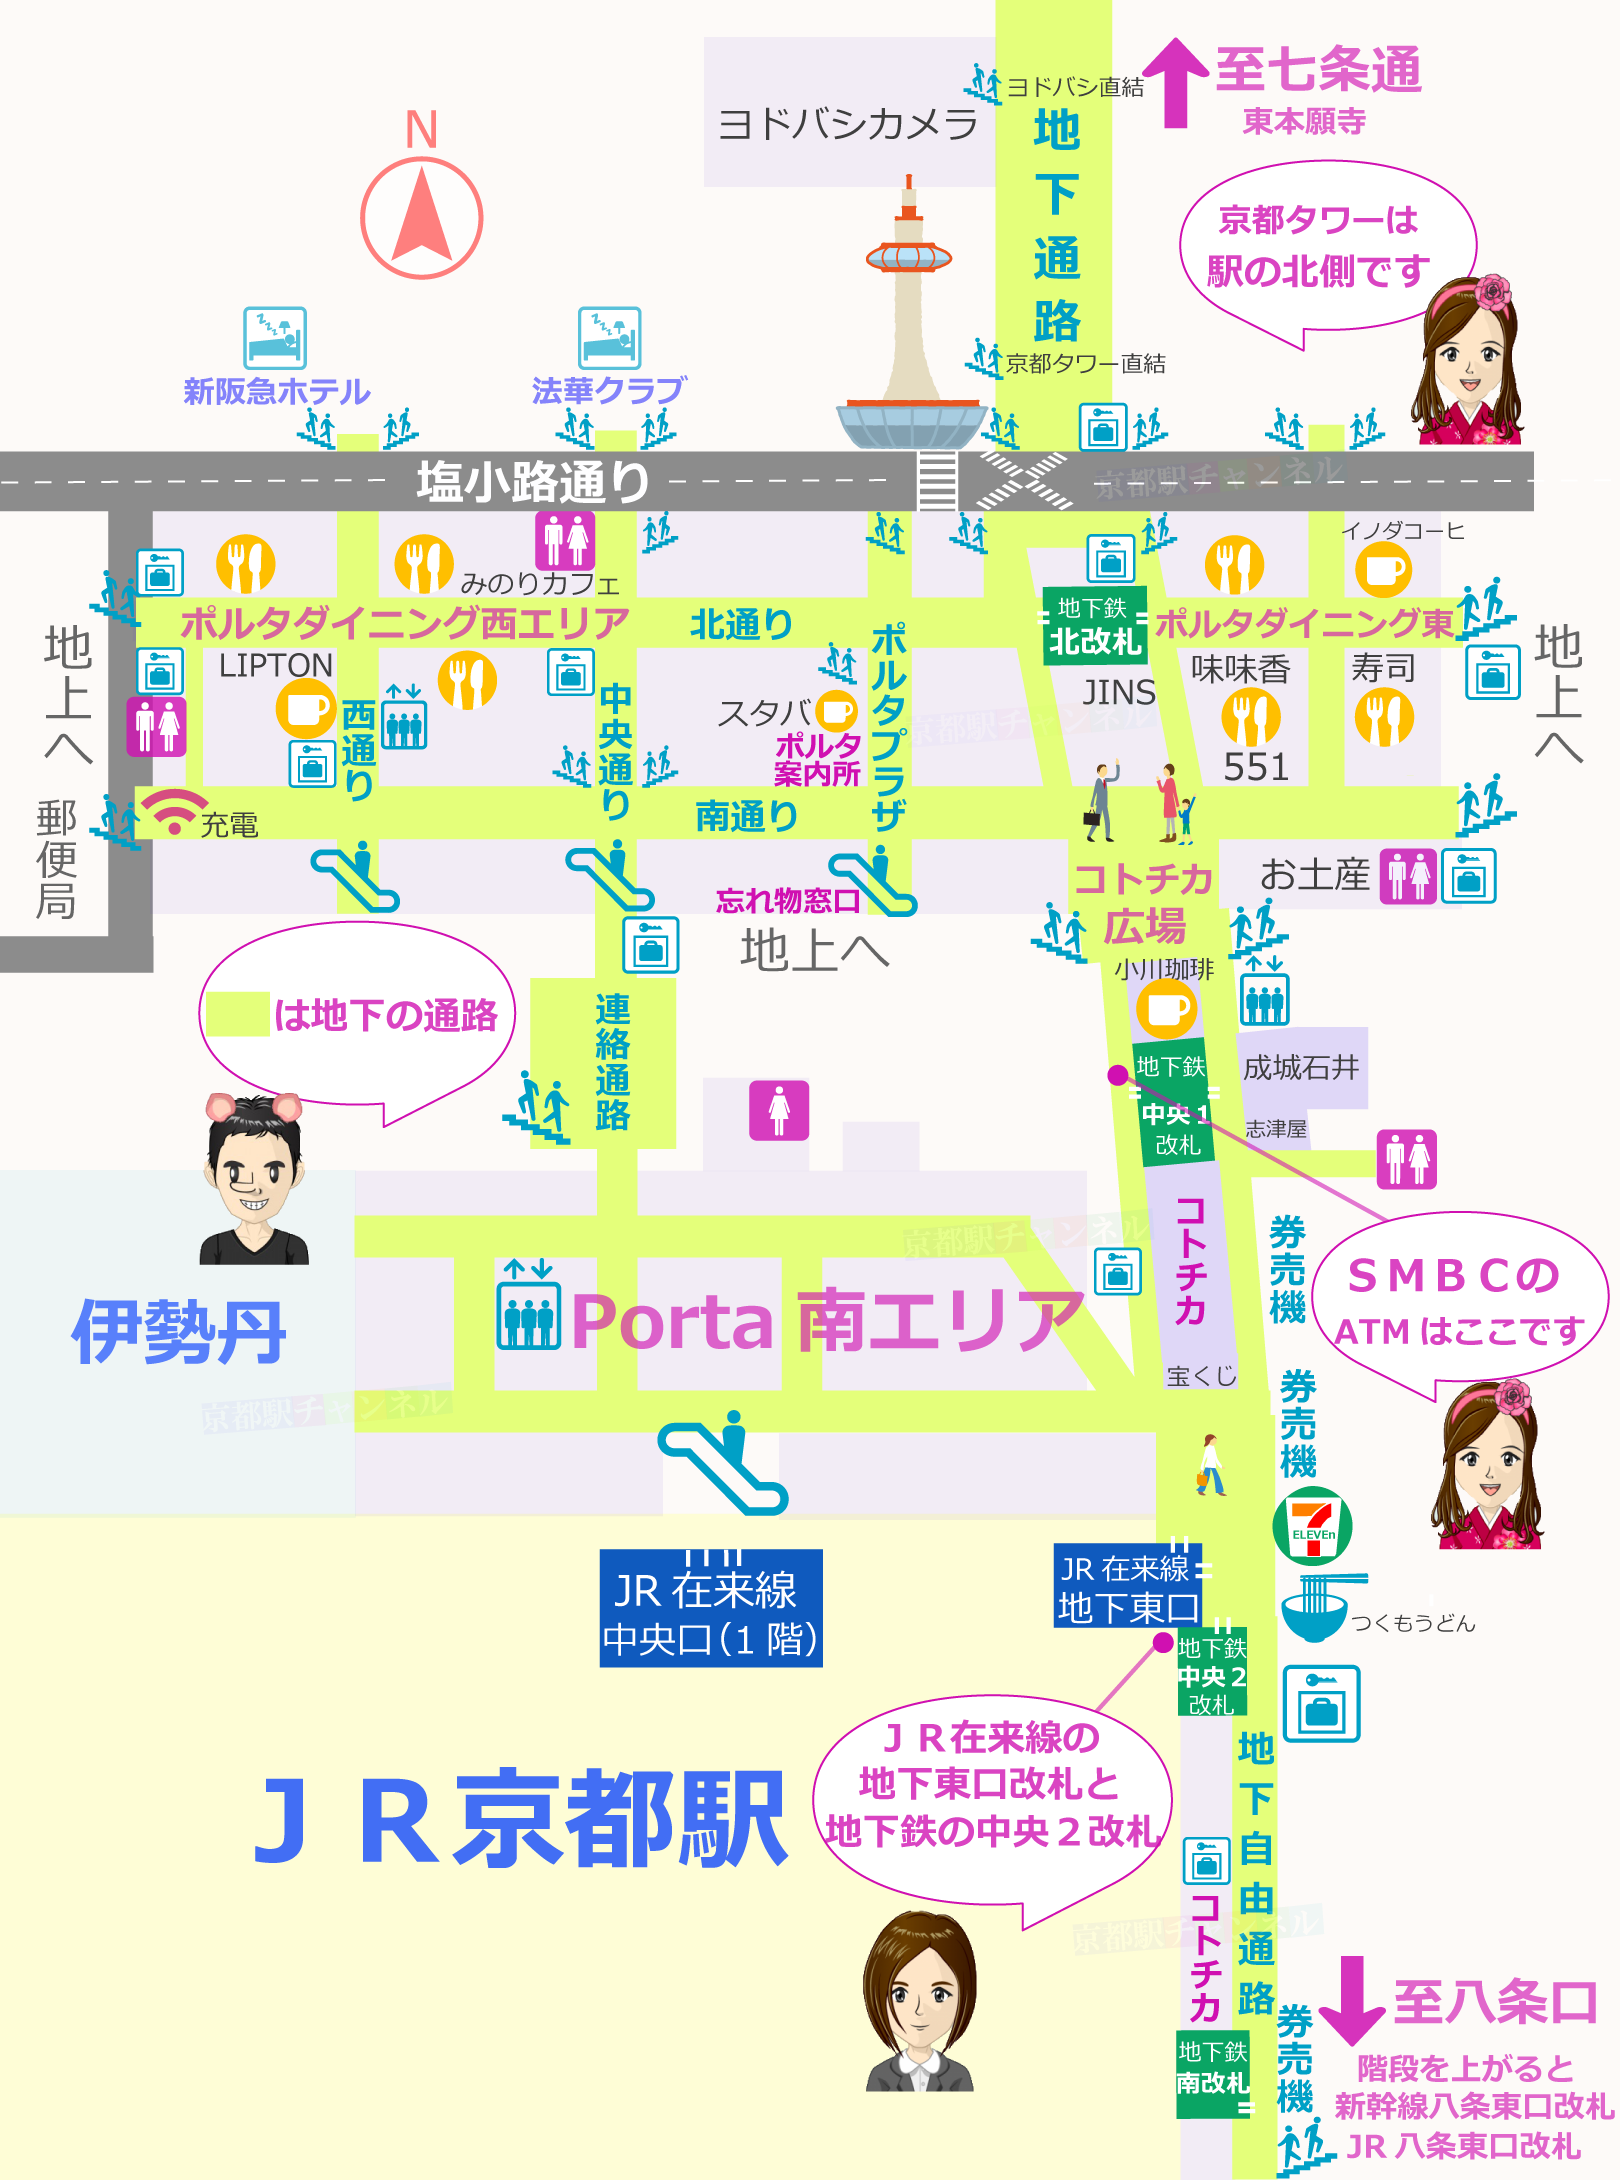 京都駅の地下と三井住友銀行のATMの地図